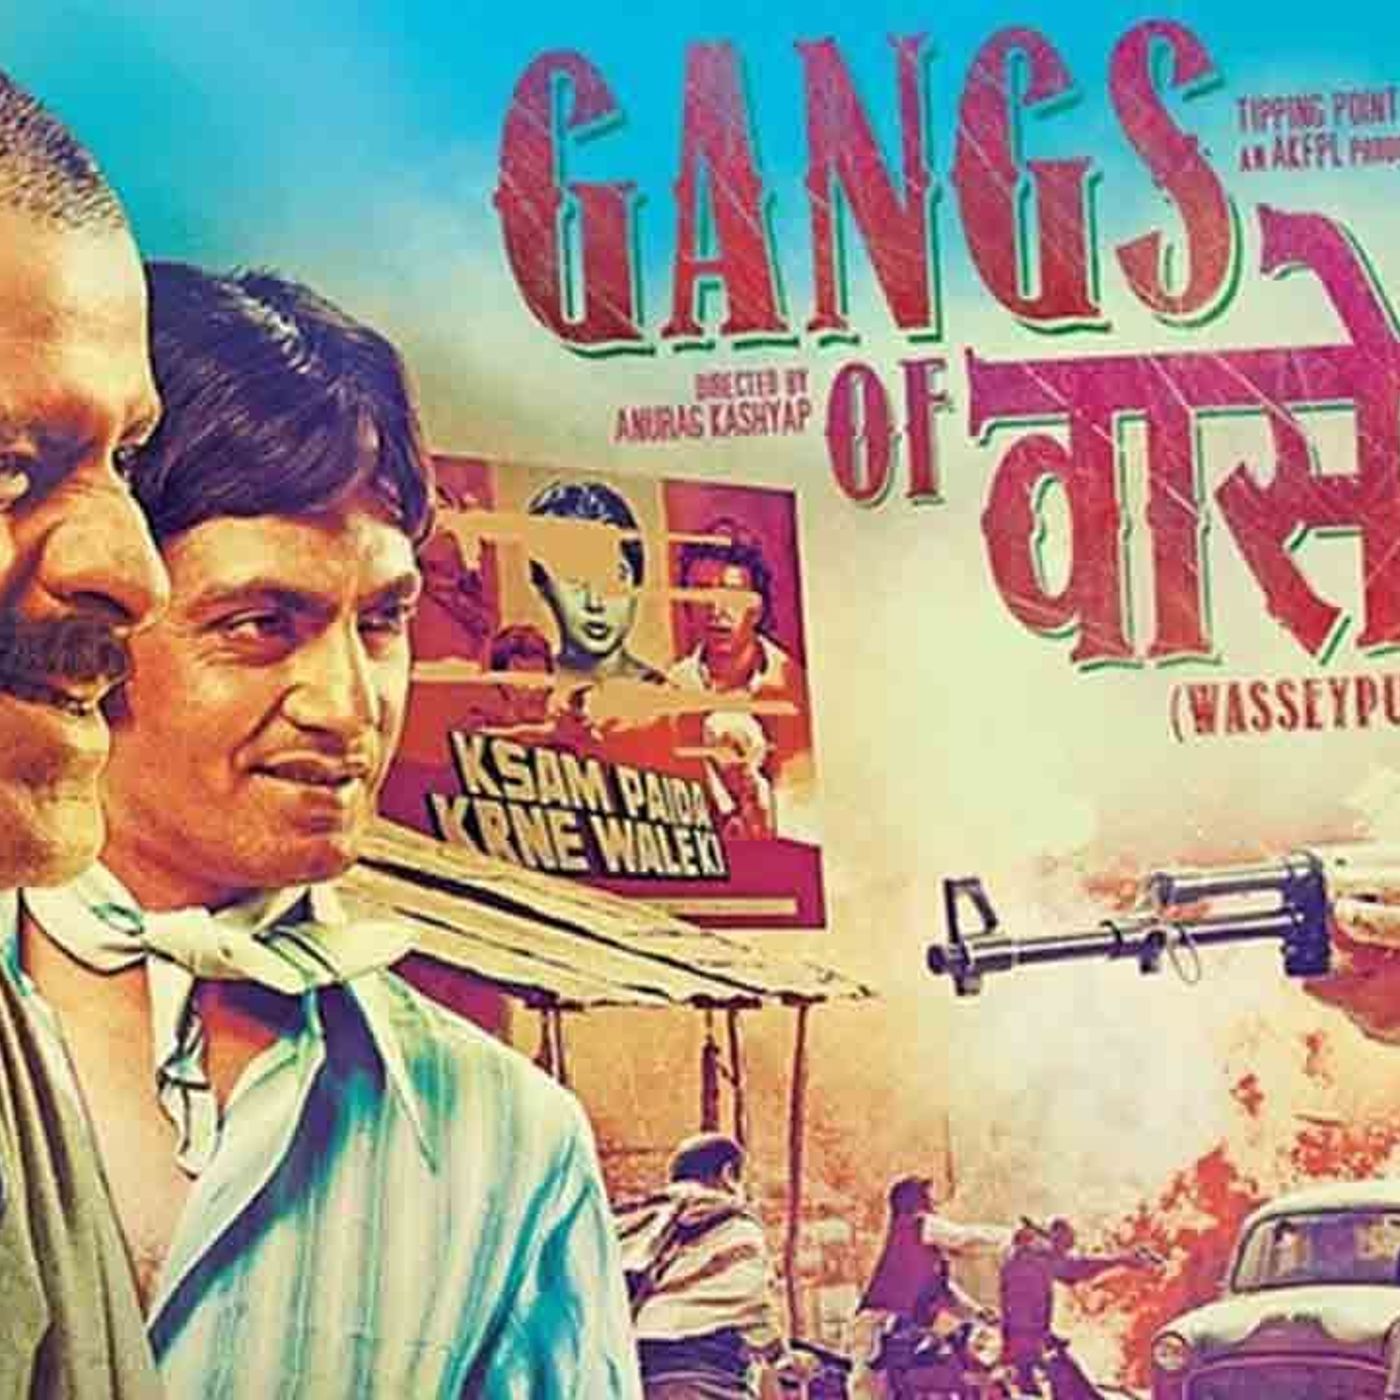 8: BONUS: Gangs of Wasseypur (Film Feud)